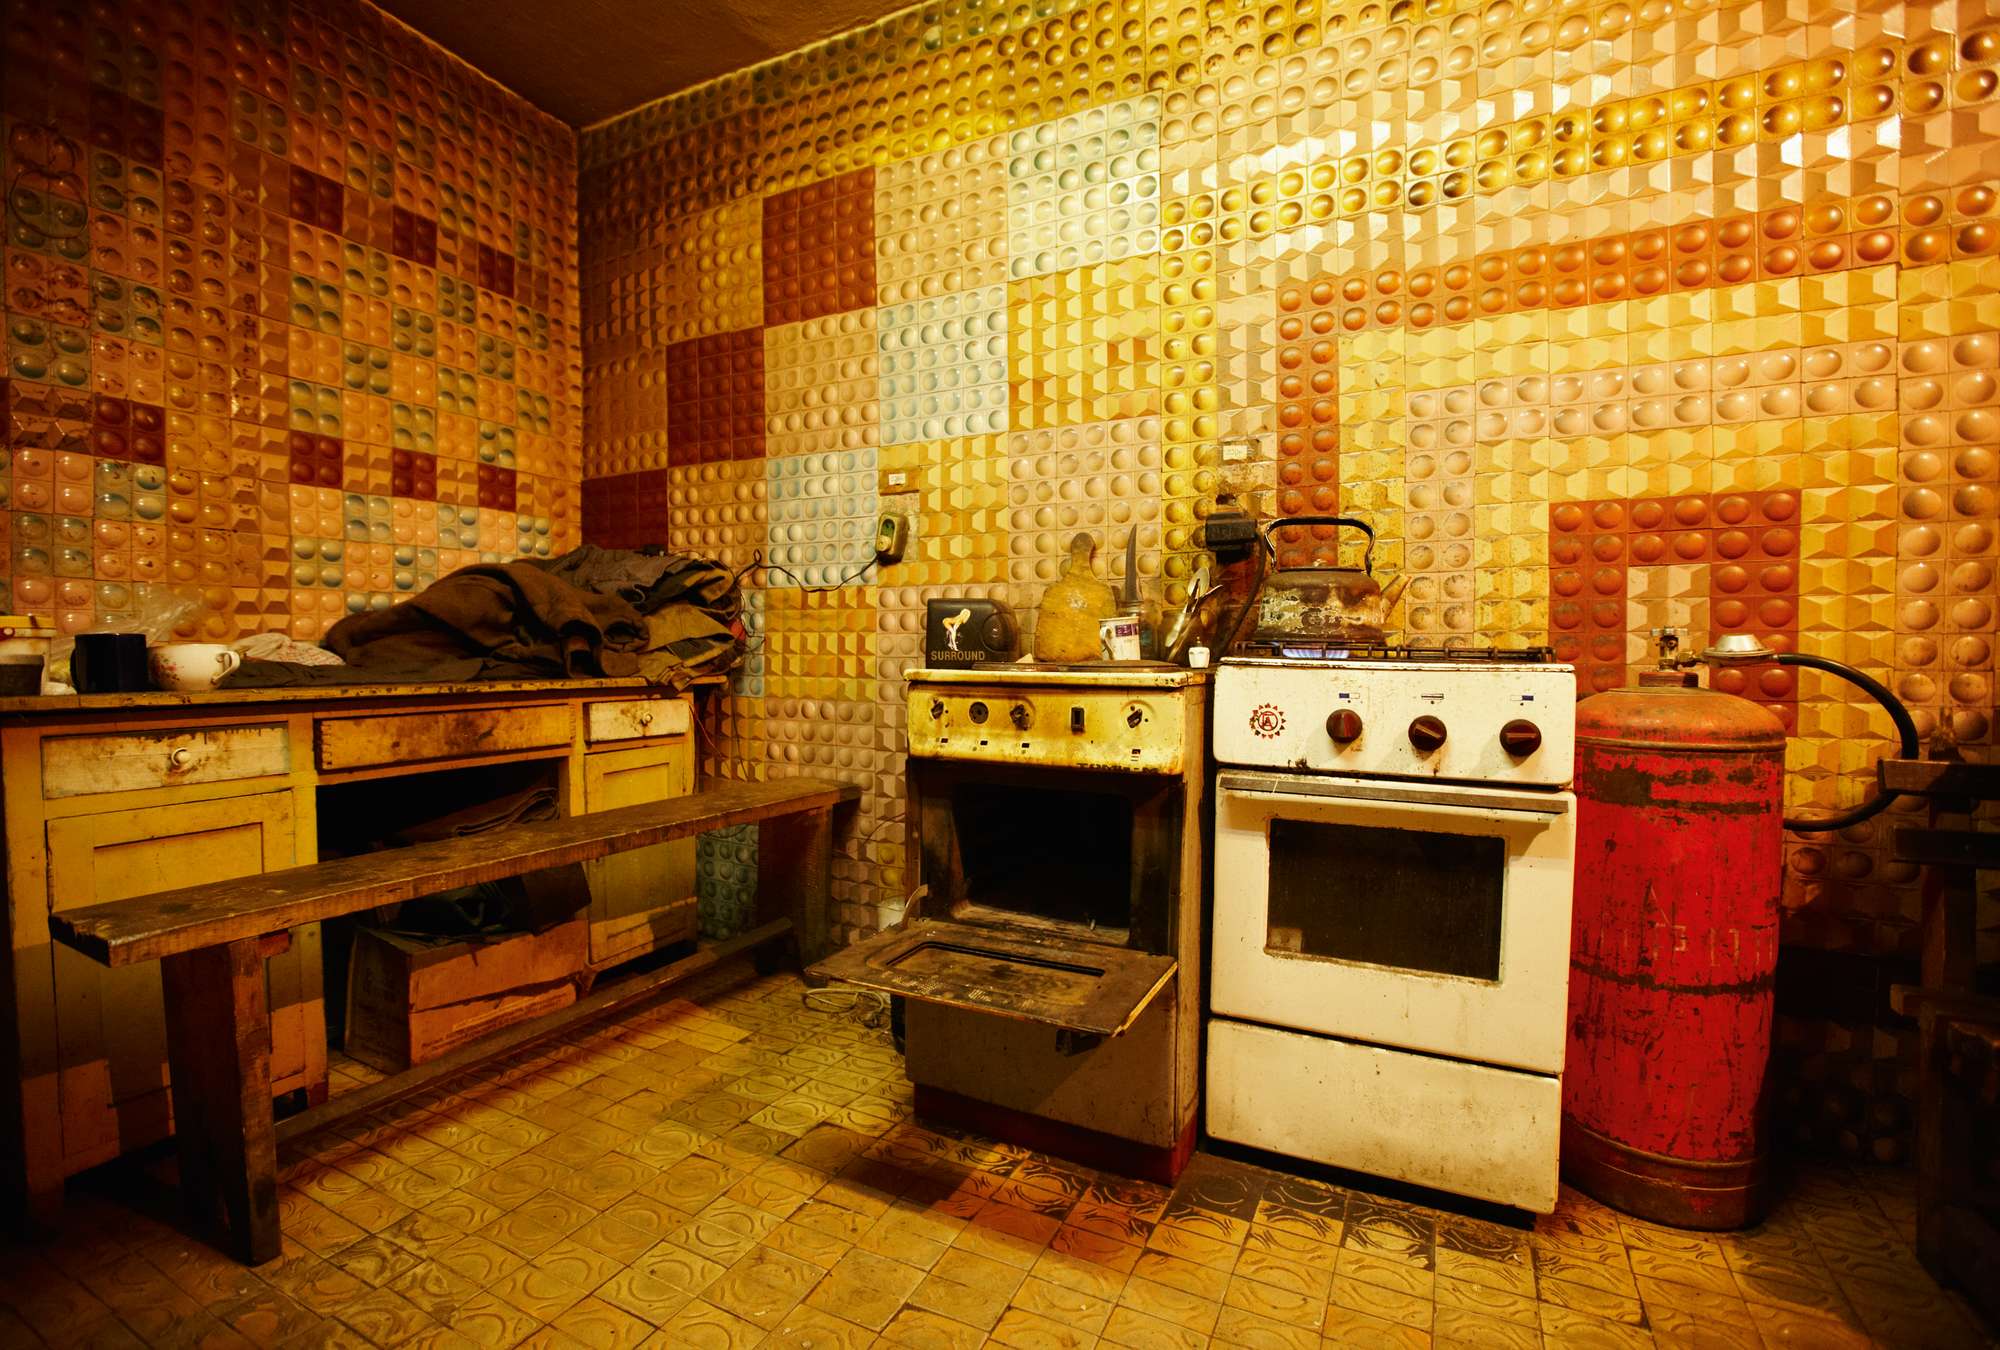             Retro Küche – Fototapete Shabby Retro Design
        